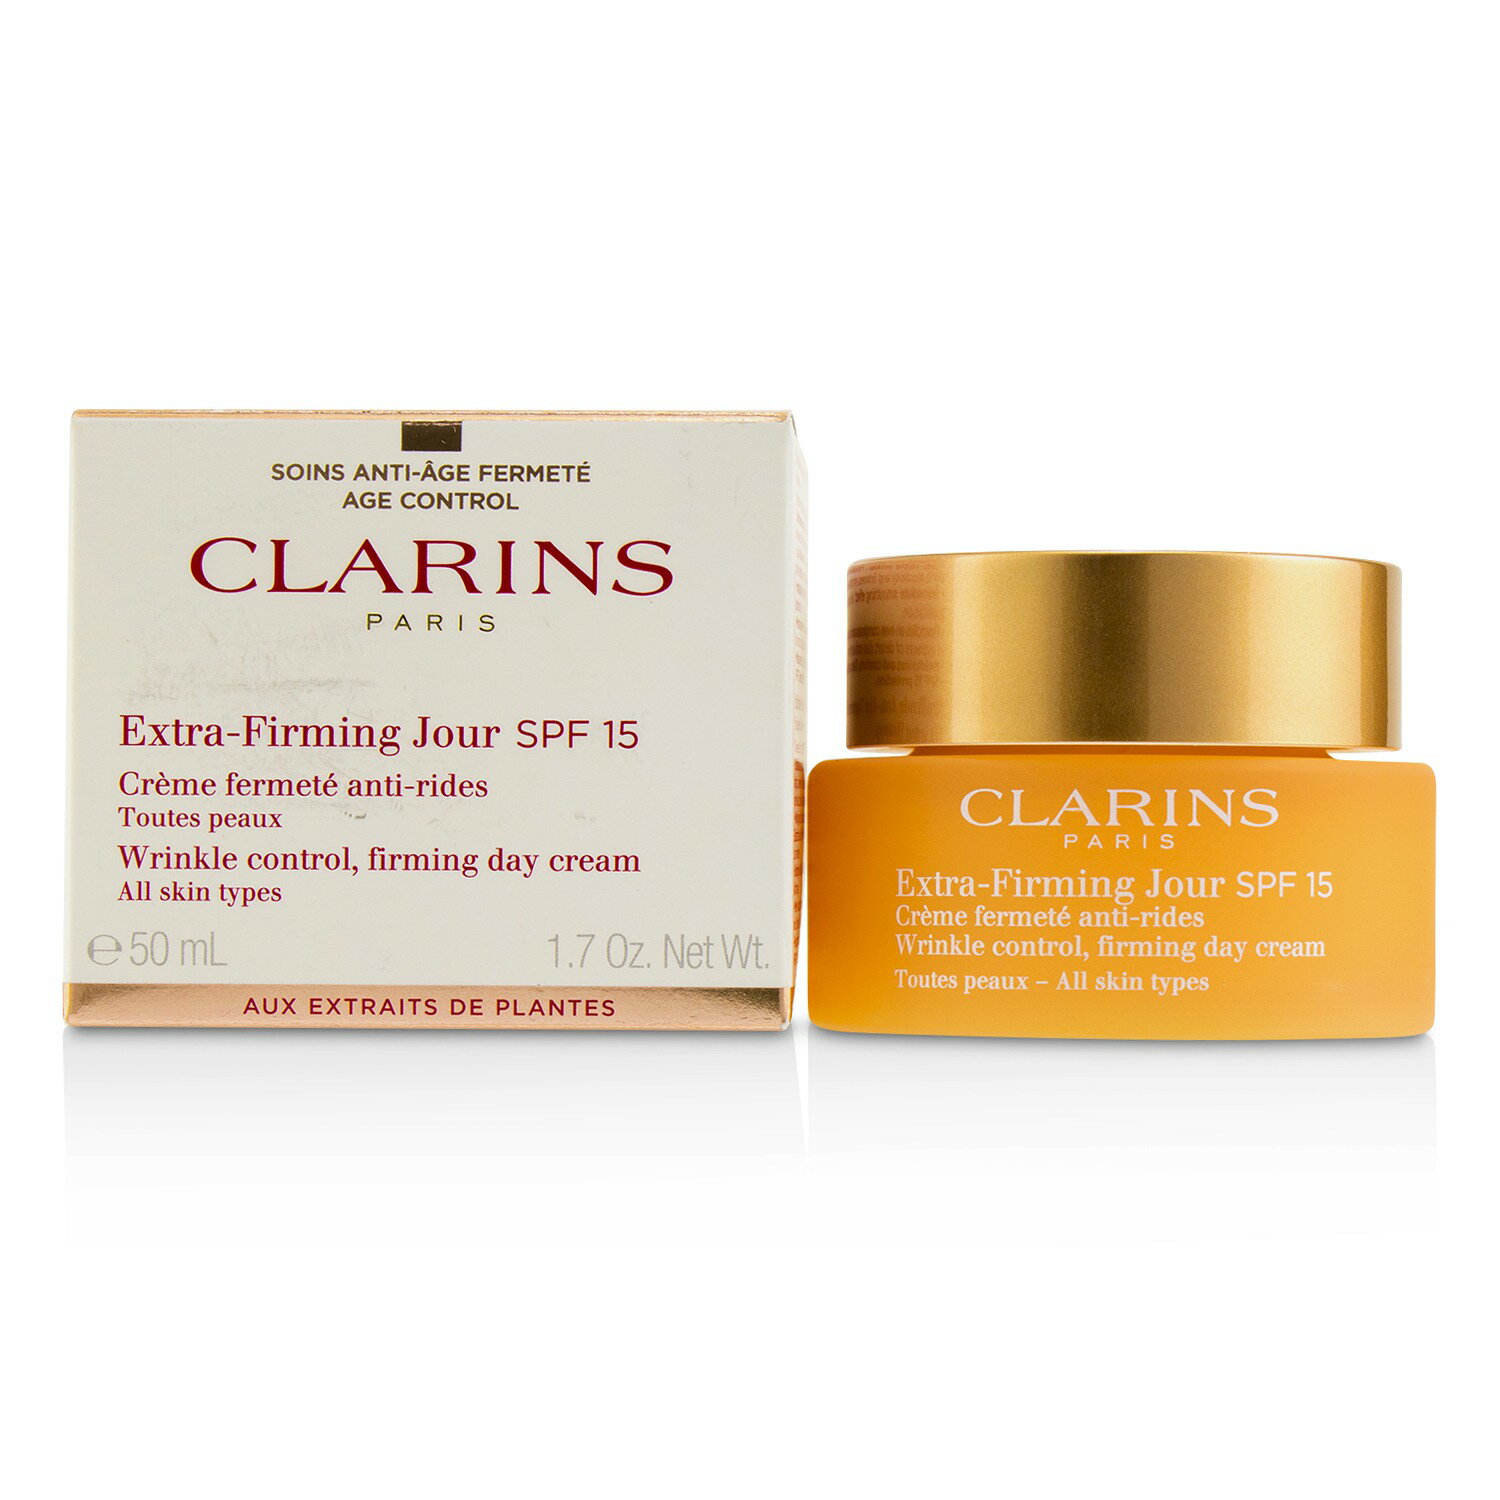 克蘭詩 Clarins - 緊致日霜-所有膚質適用Extra-Firming Jour Wrinkle Control, Firming Day Cream SPF 15 50ml